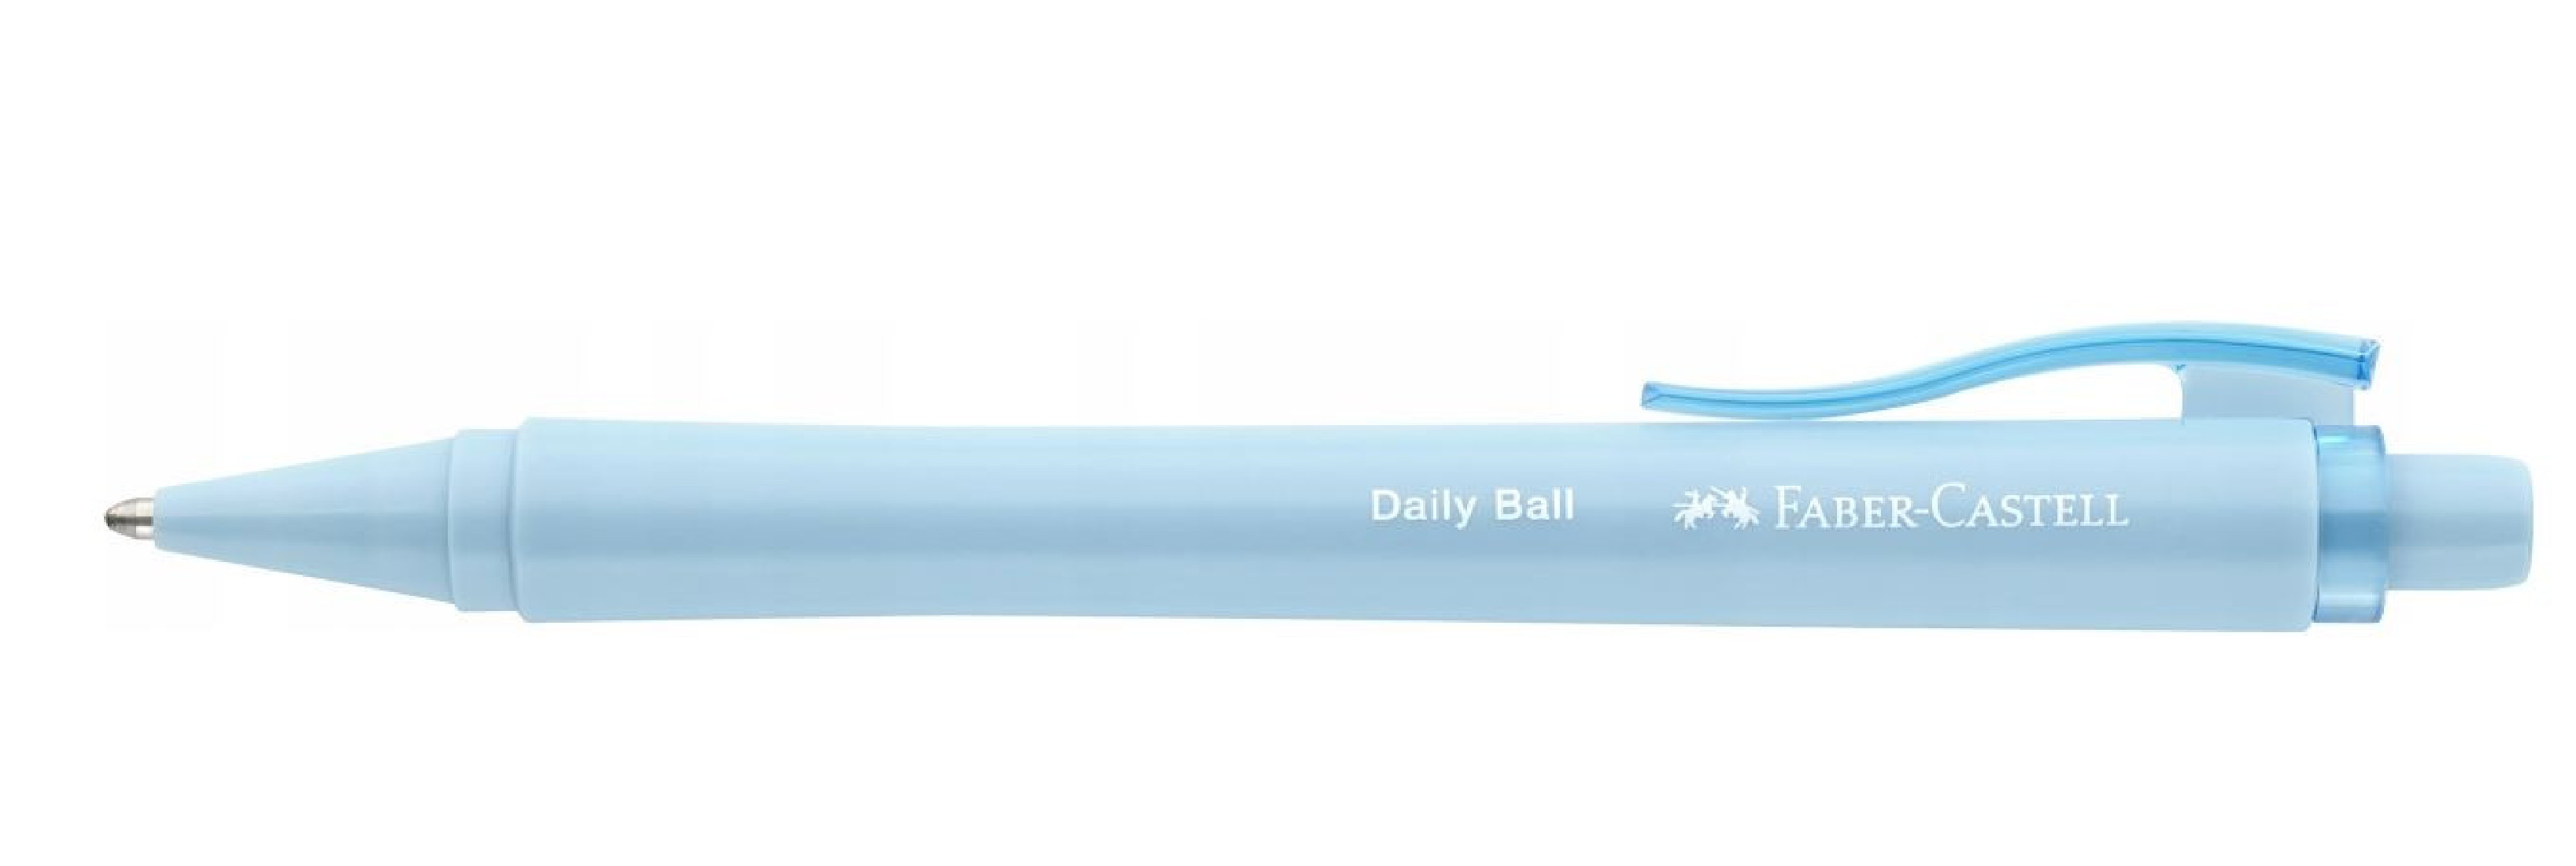 Faber Castell Daily ball XB Sky Blue 140689 ballpen